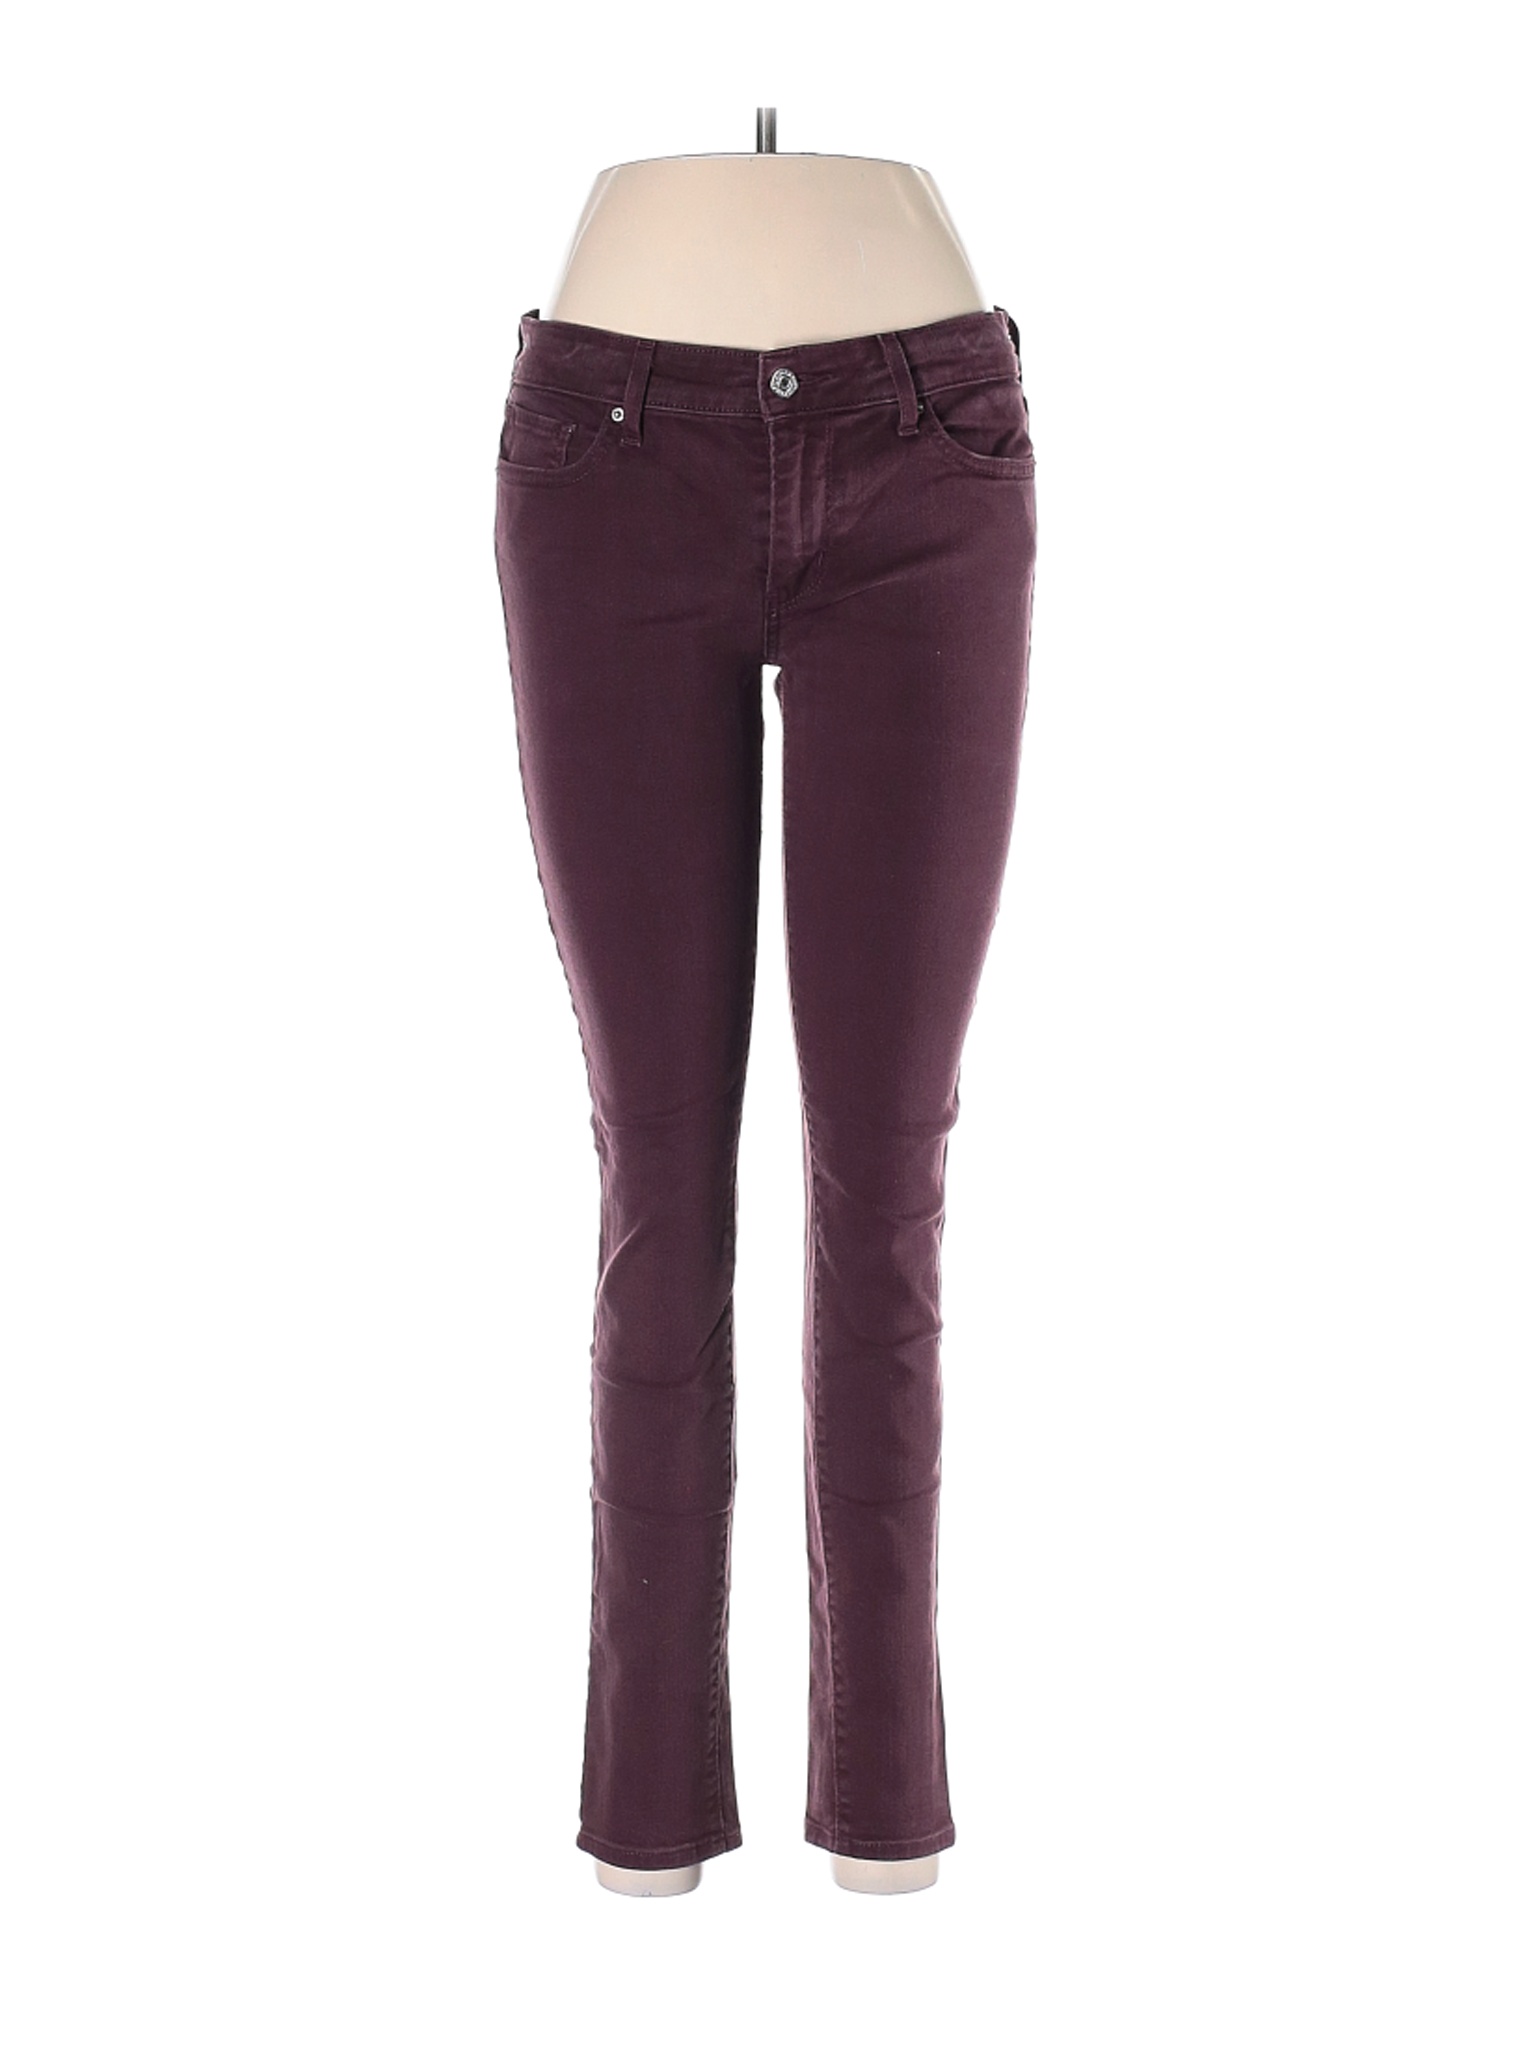 Levi's Women Purple Jeans 28W | eBay